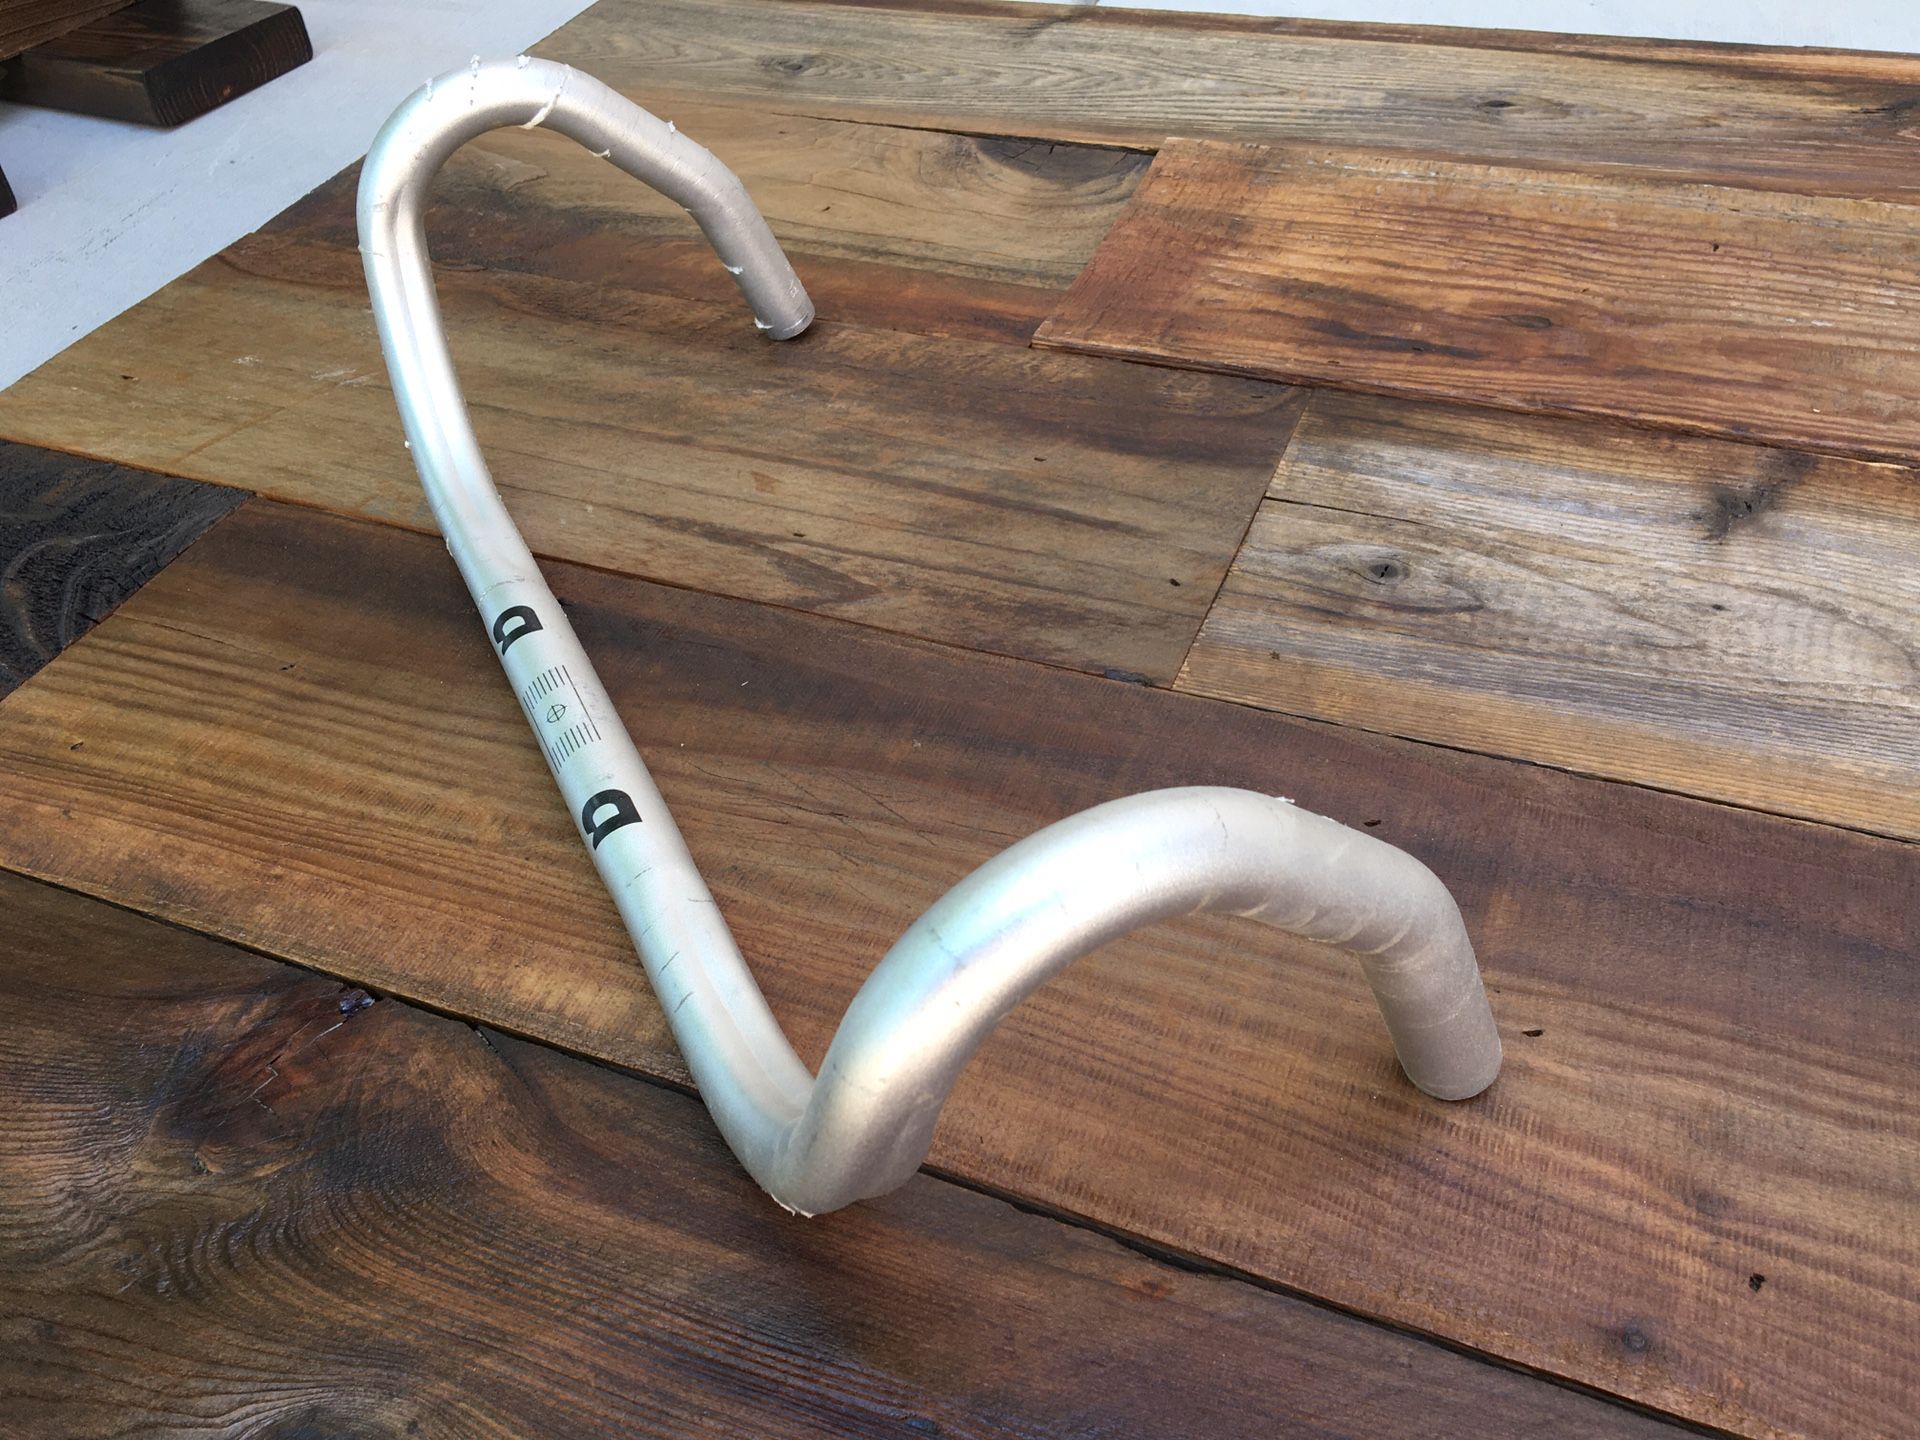 Road bike handlebars, 22mm clamp